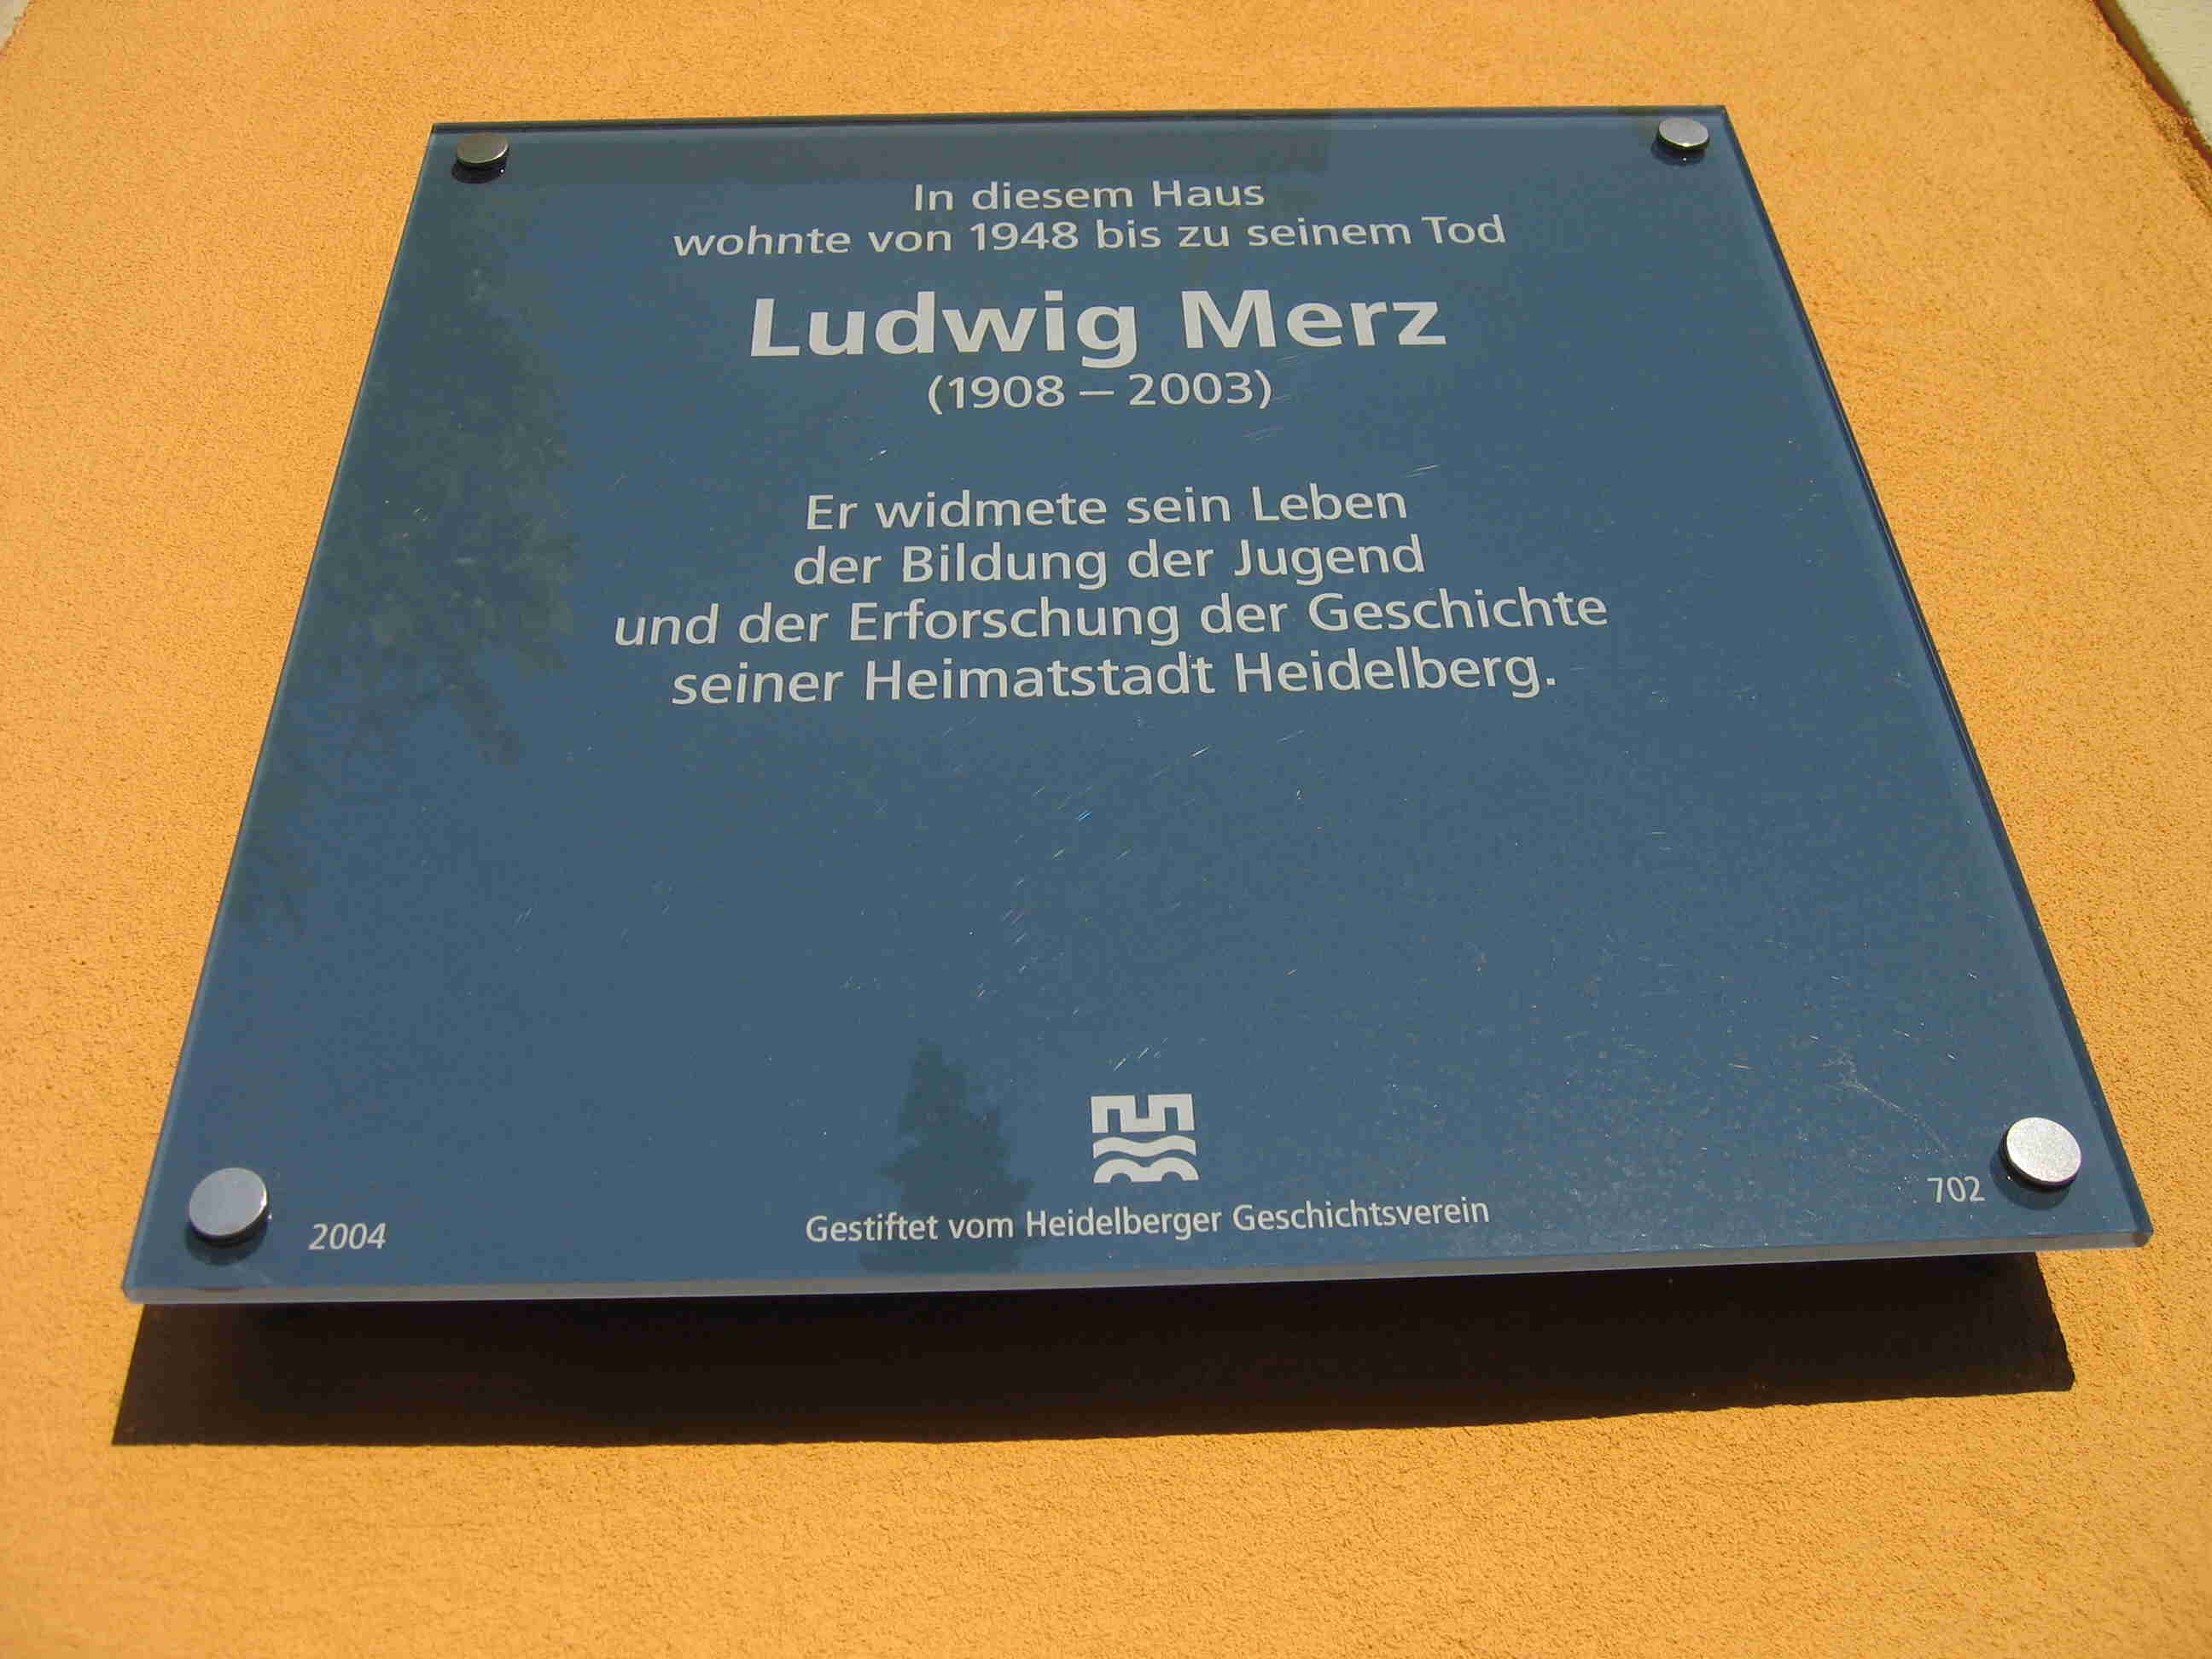 Gedenktafel für Ludwig Merz, Quinckestraße 18 (2005)